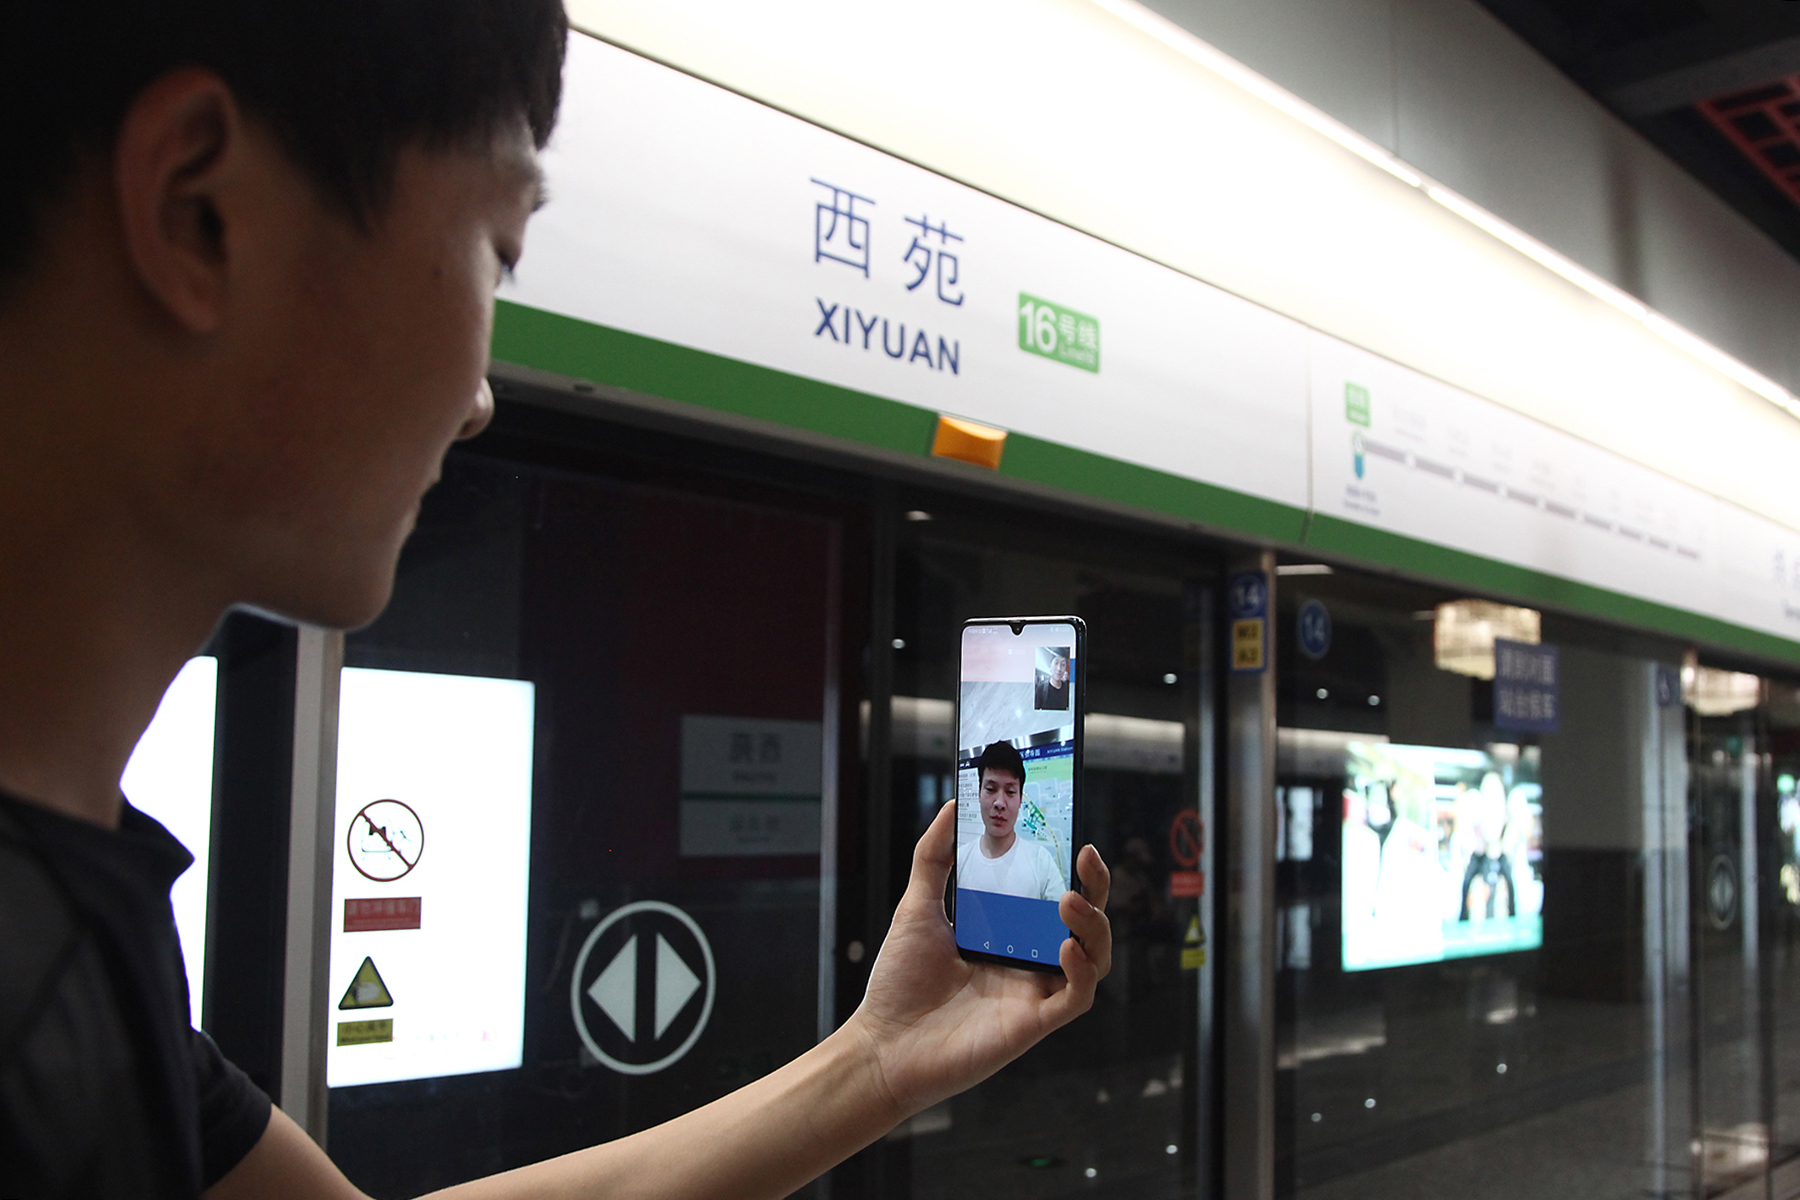 京港地鐵16號線成為中國首條5G信號全覆蓋線路C]京港地鐵提供^